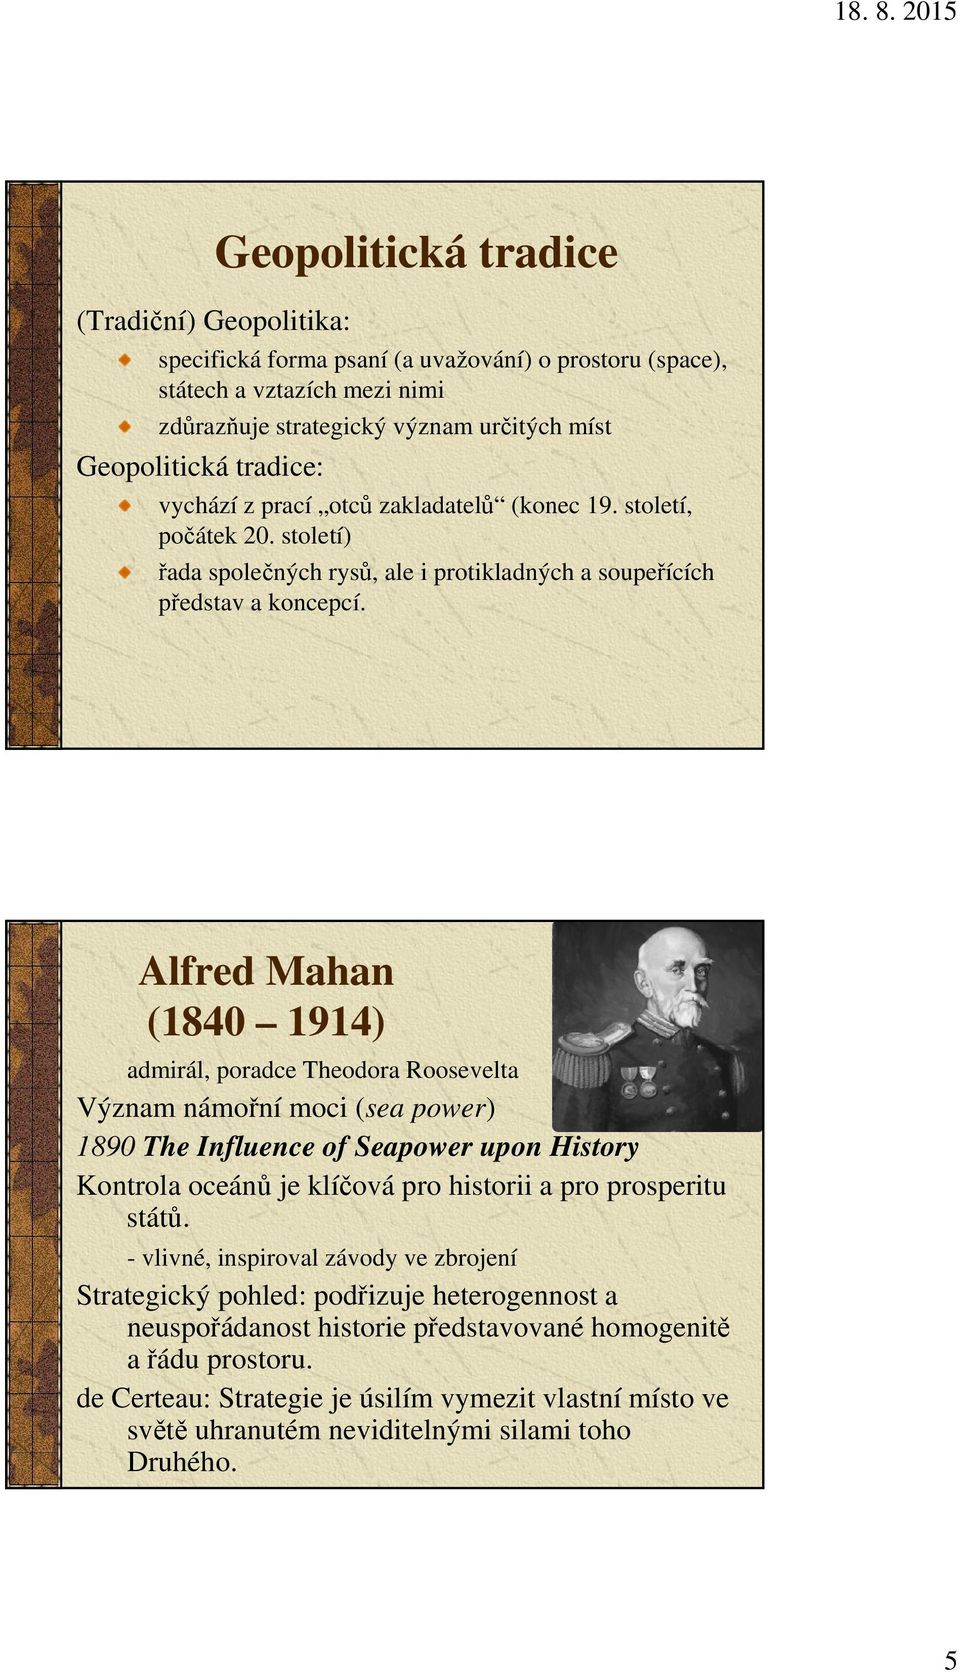 Alfred Mahan (1840 1914) admirál, poradce Theodora Roosevelta Význam námořní moci (sea power) 1890 The Influence of Seapower upon History Kontrola oceánů je klíčová pro historii a pro prosperitu